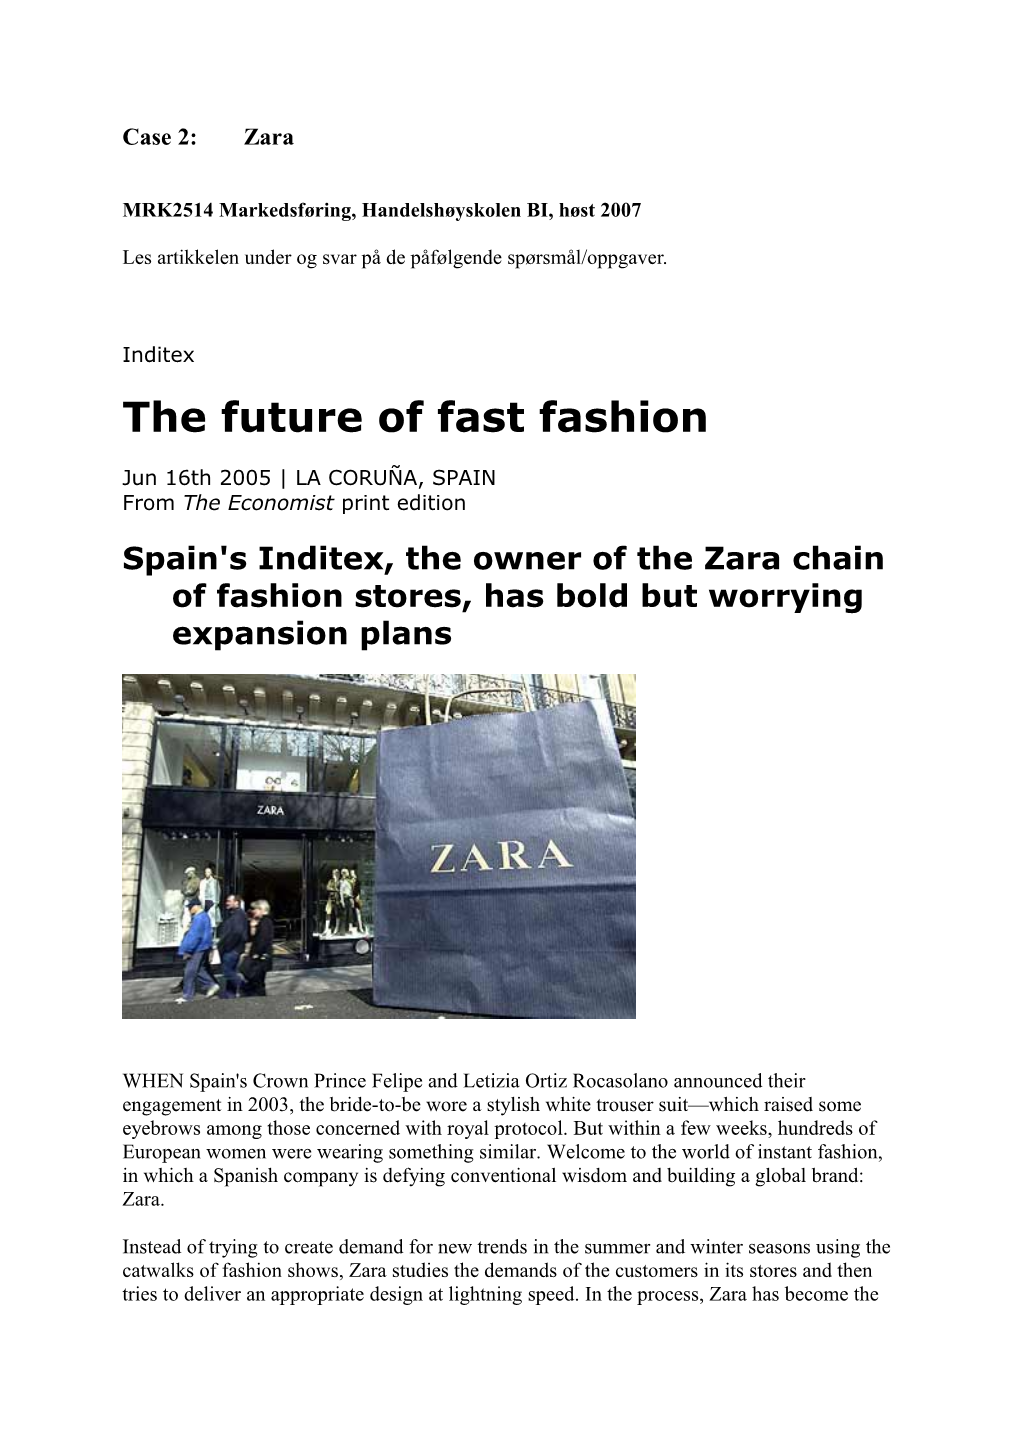 The Future of Fast Fashion